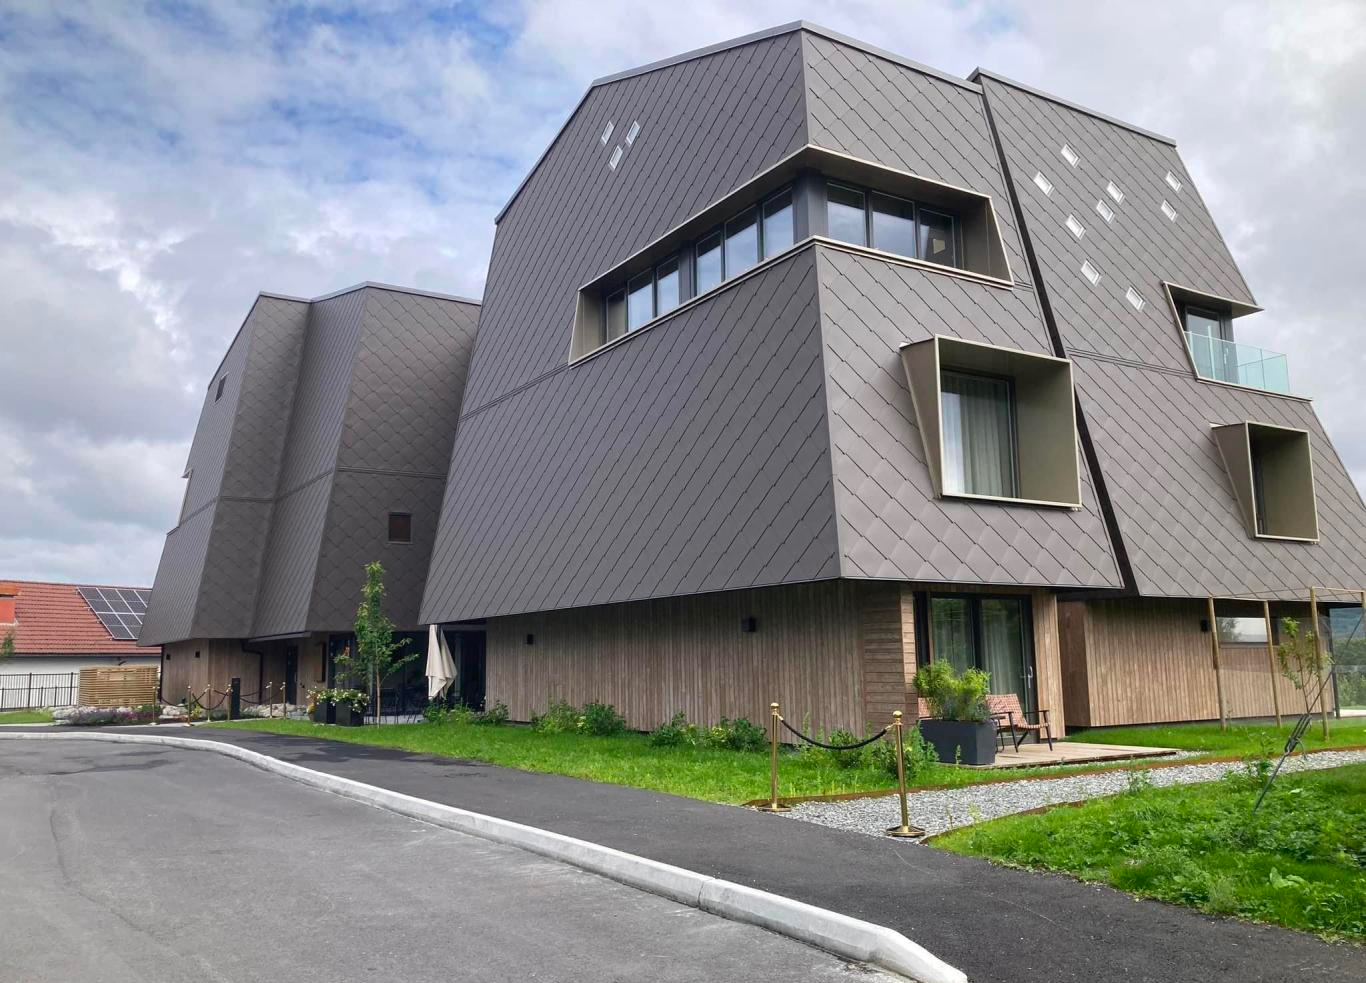 Beckerwyc House i Bekkjarvik i Vestland blir sammenlignet med det såkalte «Darth Vader-huset» på Sankthanshaugen i Oslo. Det er blant de nominerte til prisen for årets styggeste nybygg, som deles ut av Arkitekturopprøret. (Foto: Presse.)